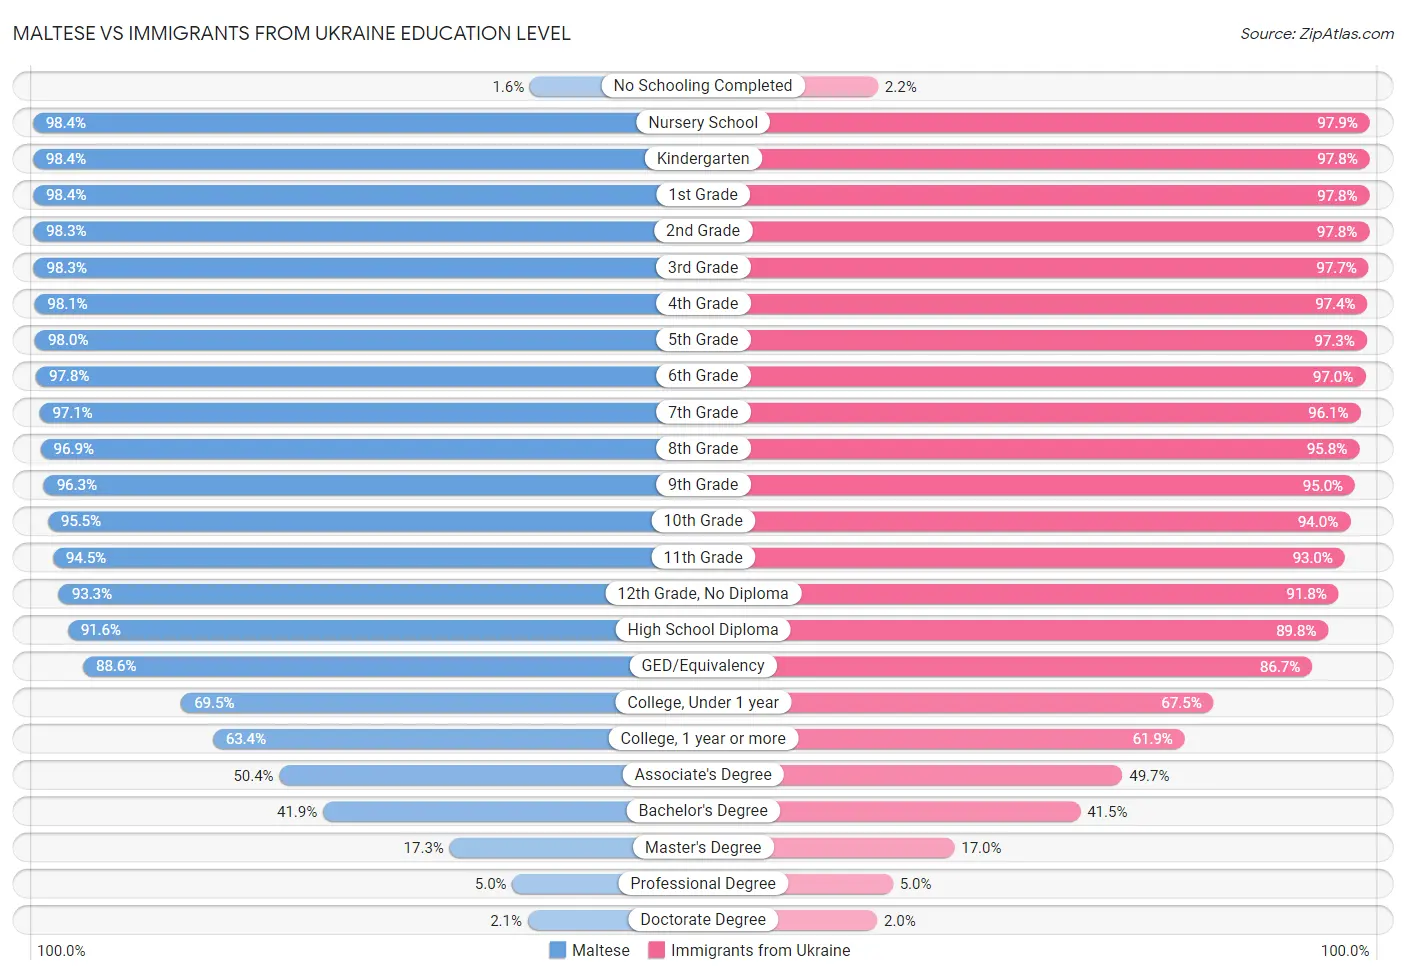 Maltese vs Immigrants from Ukraine Education Level